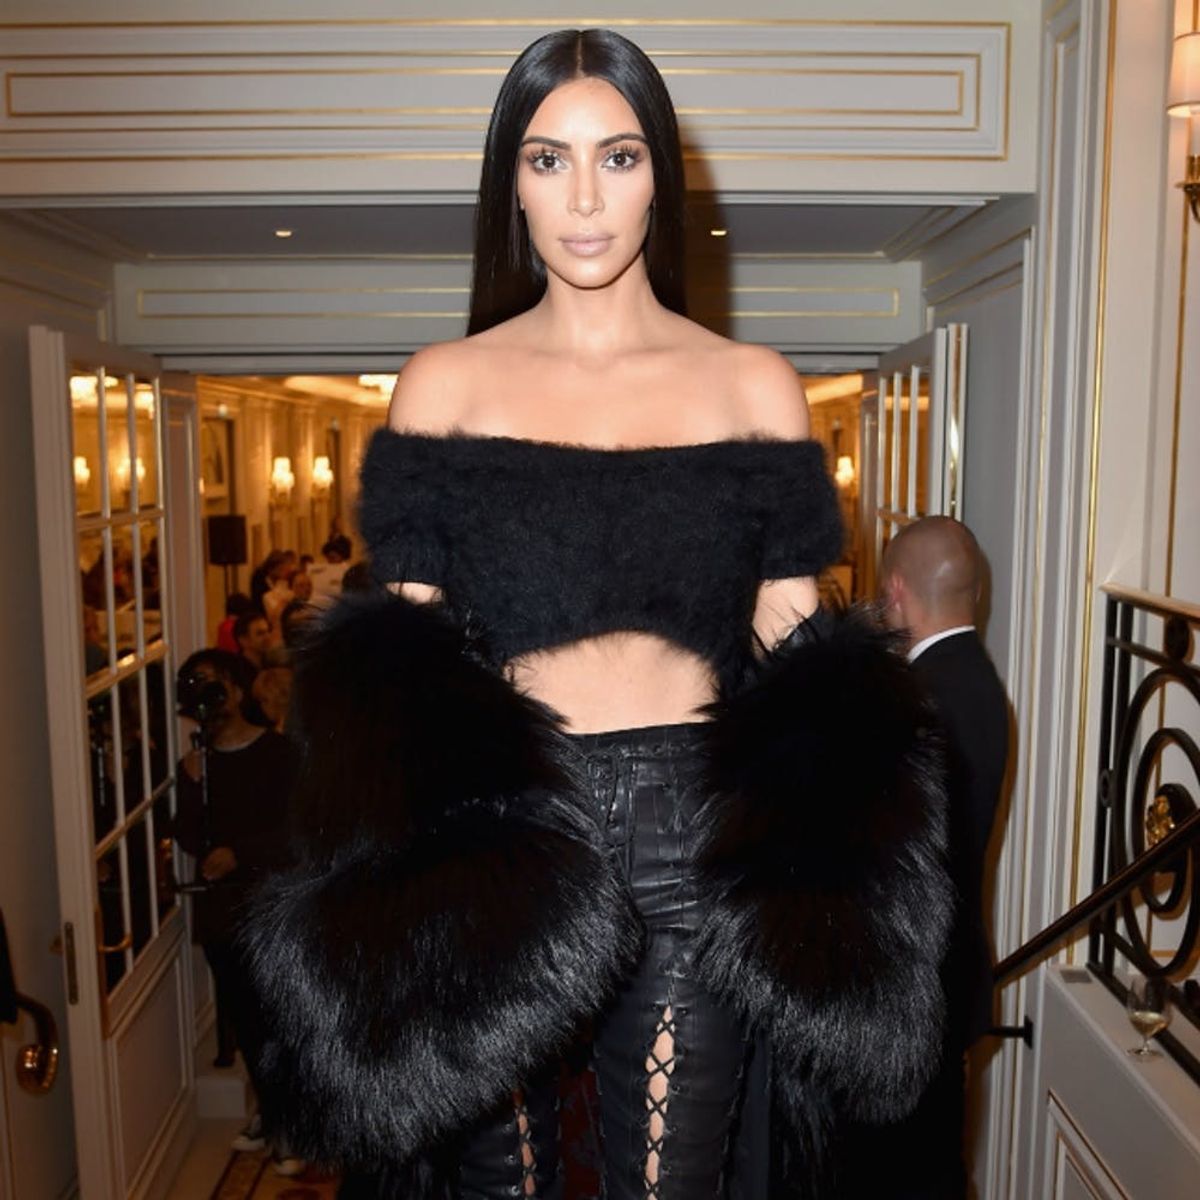 Kim Kardashian’s Social Media Hiatus Is an Important Lesson About Women’s Privacy